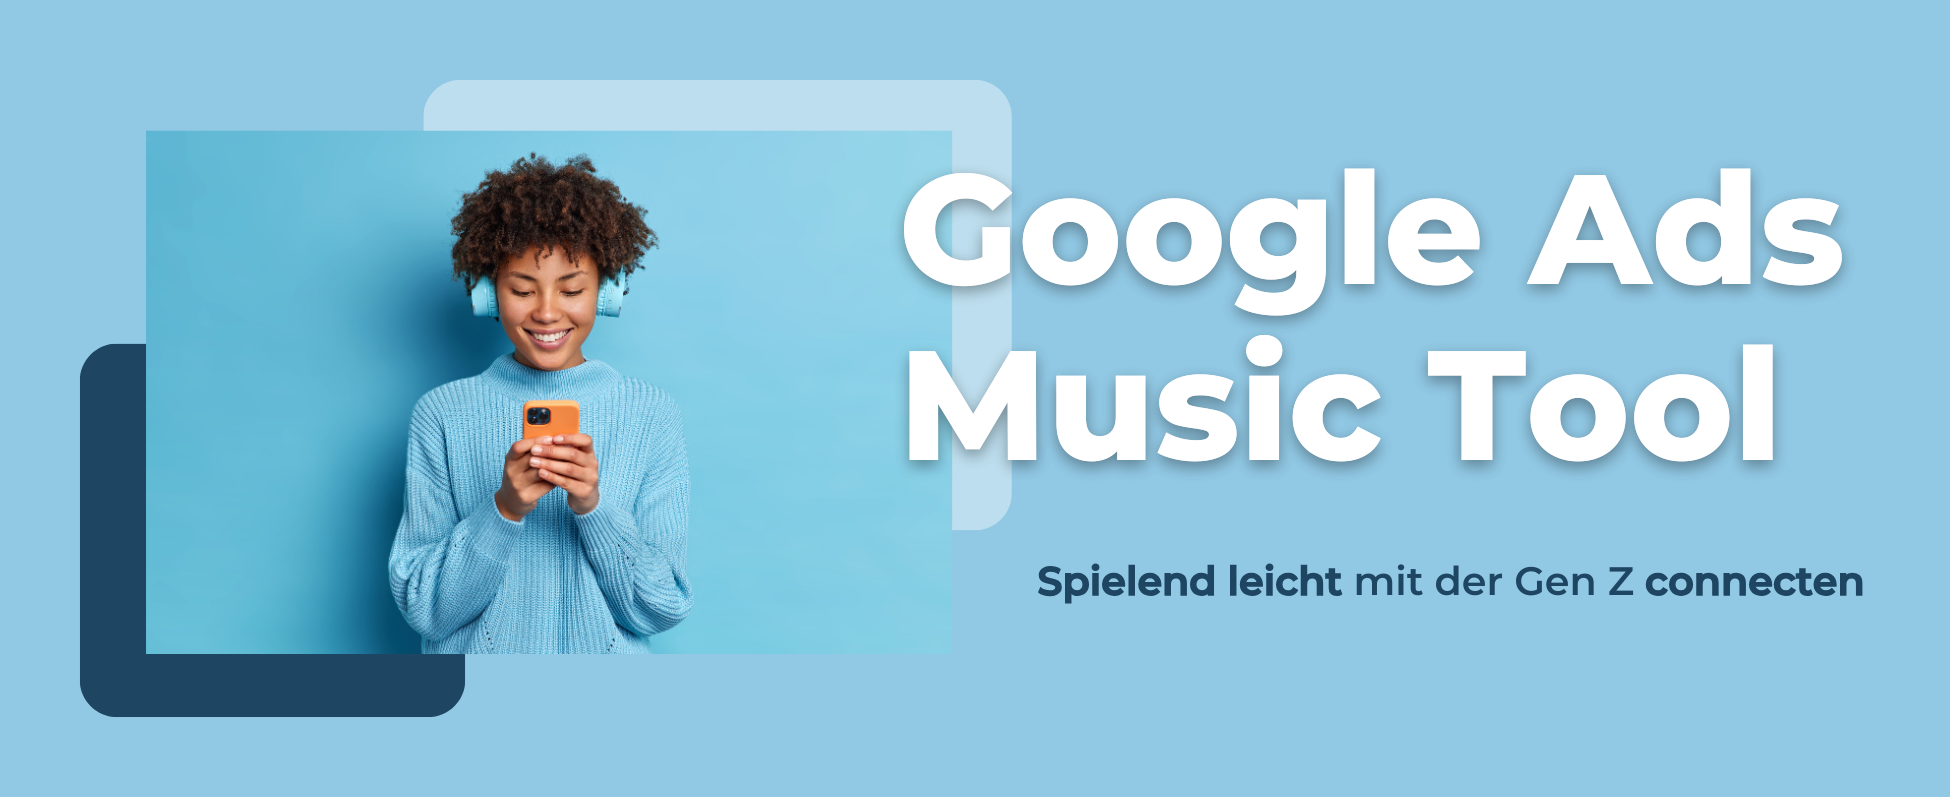 Google Ads Music Lineup Tool: Einfach mit der Gen Z connecten